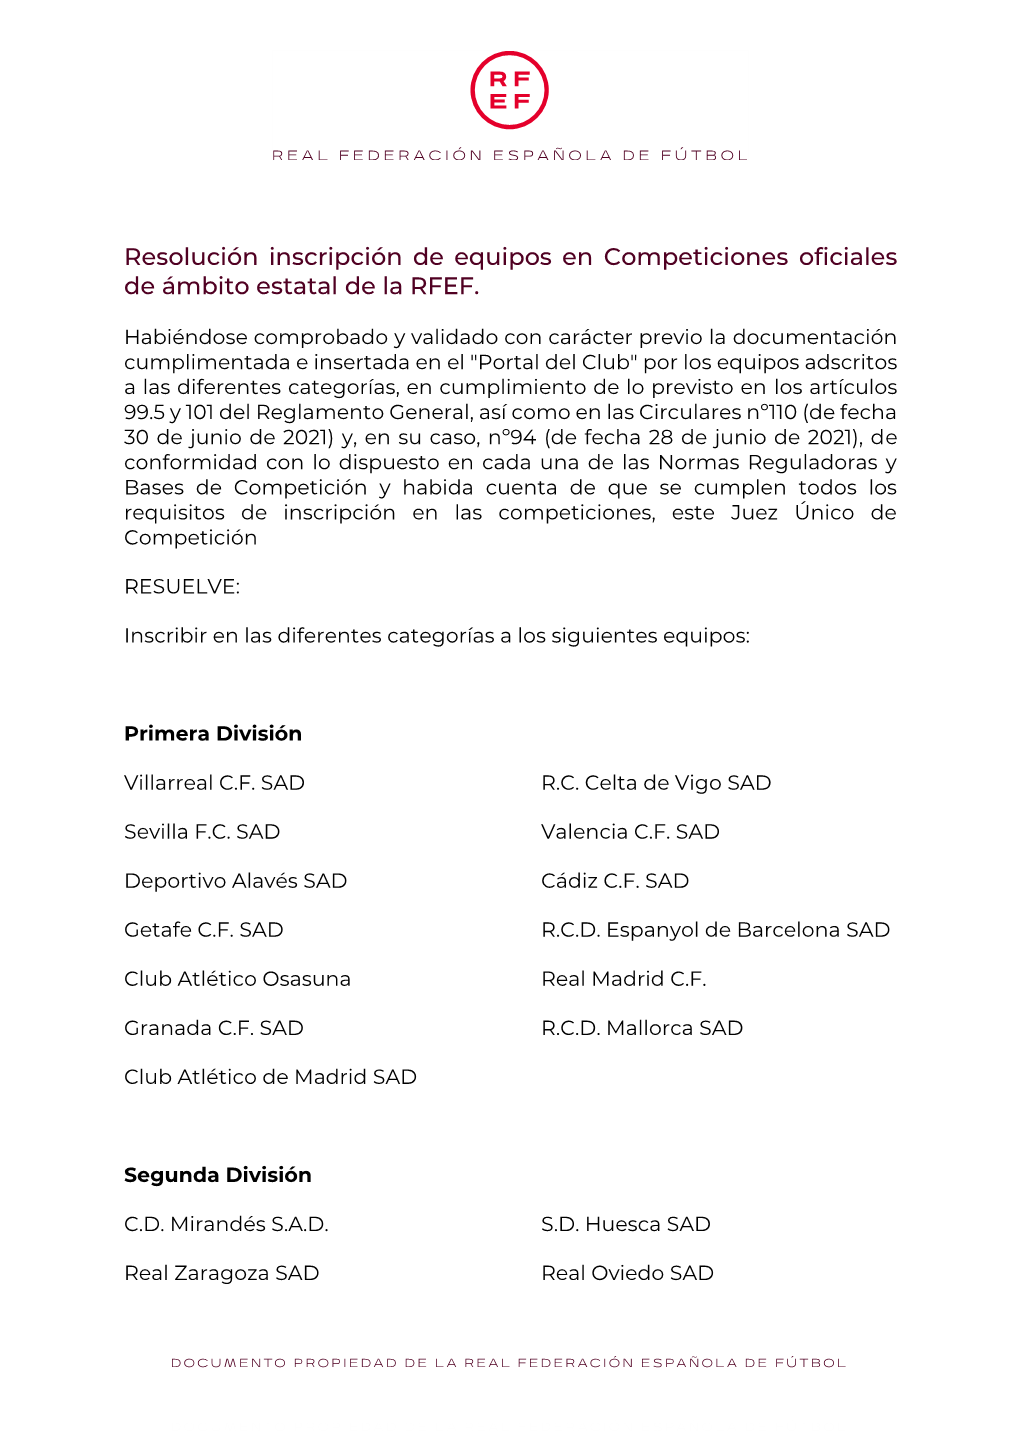 Resolución Inscripción De Equipos En Competiciones Oficiales De Ámbito Estatal De La RFEF